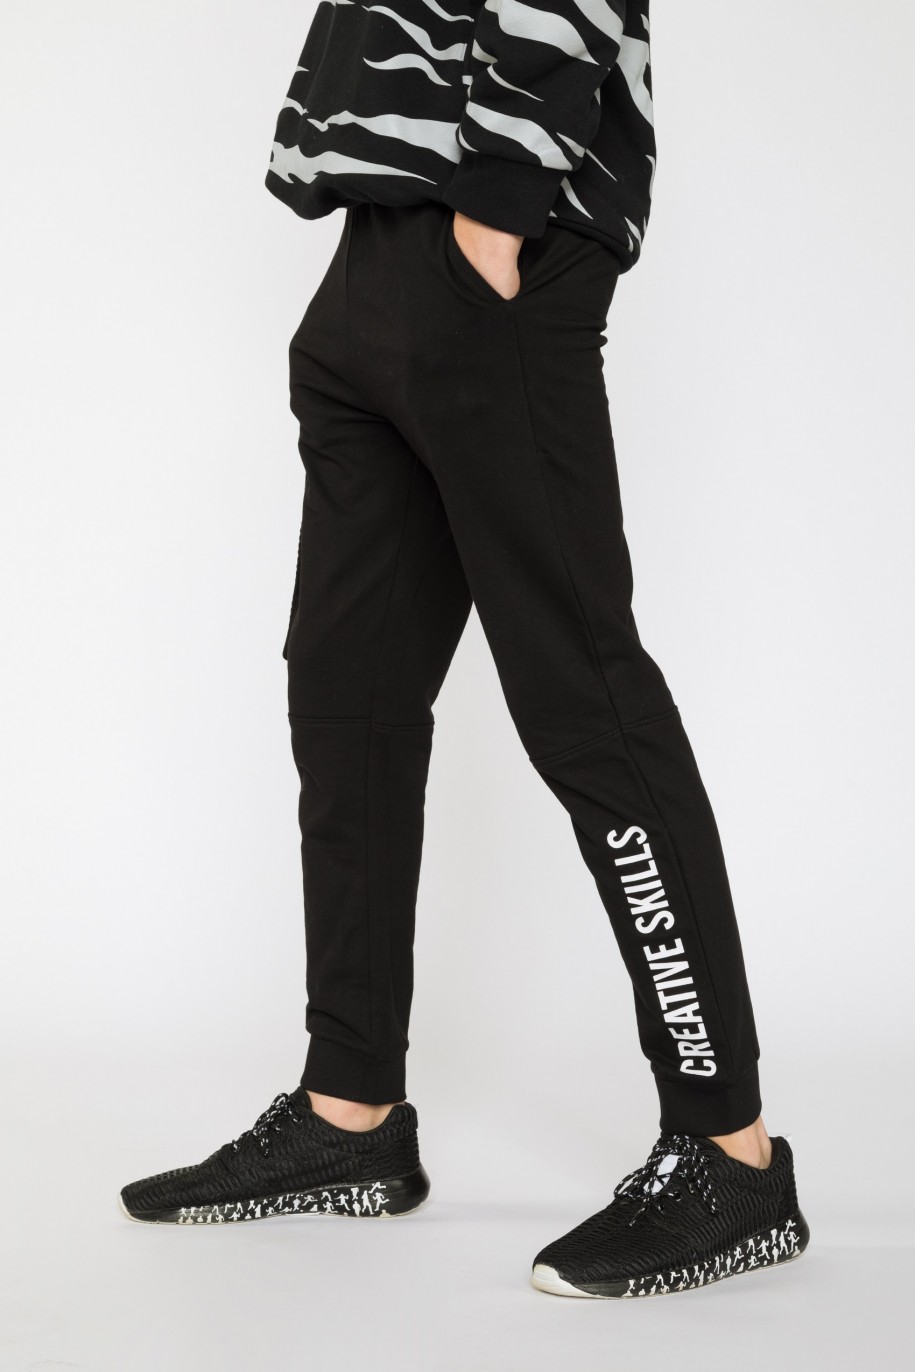 Czarne spodnie dresowe dla chłopaka CREATIVE SKILLS - 31603